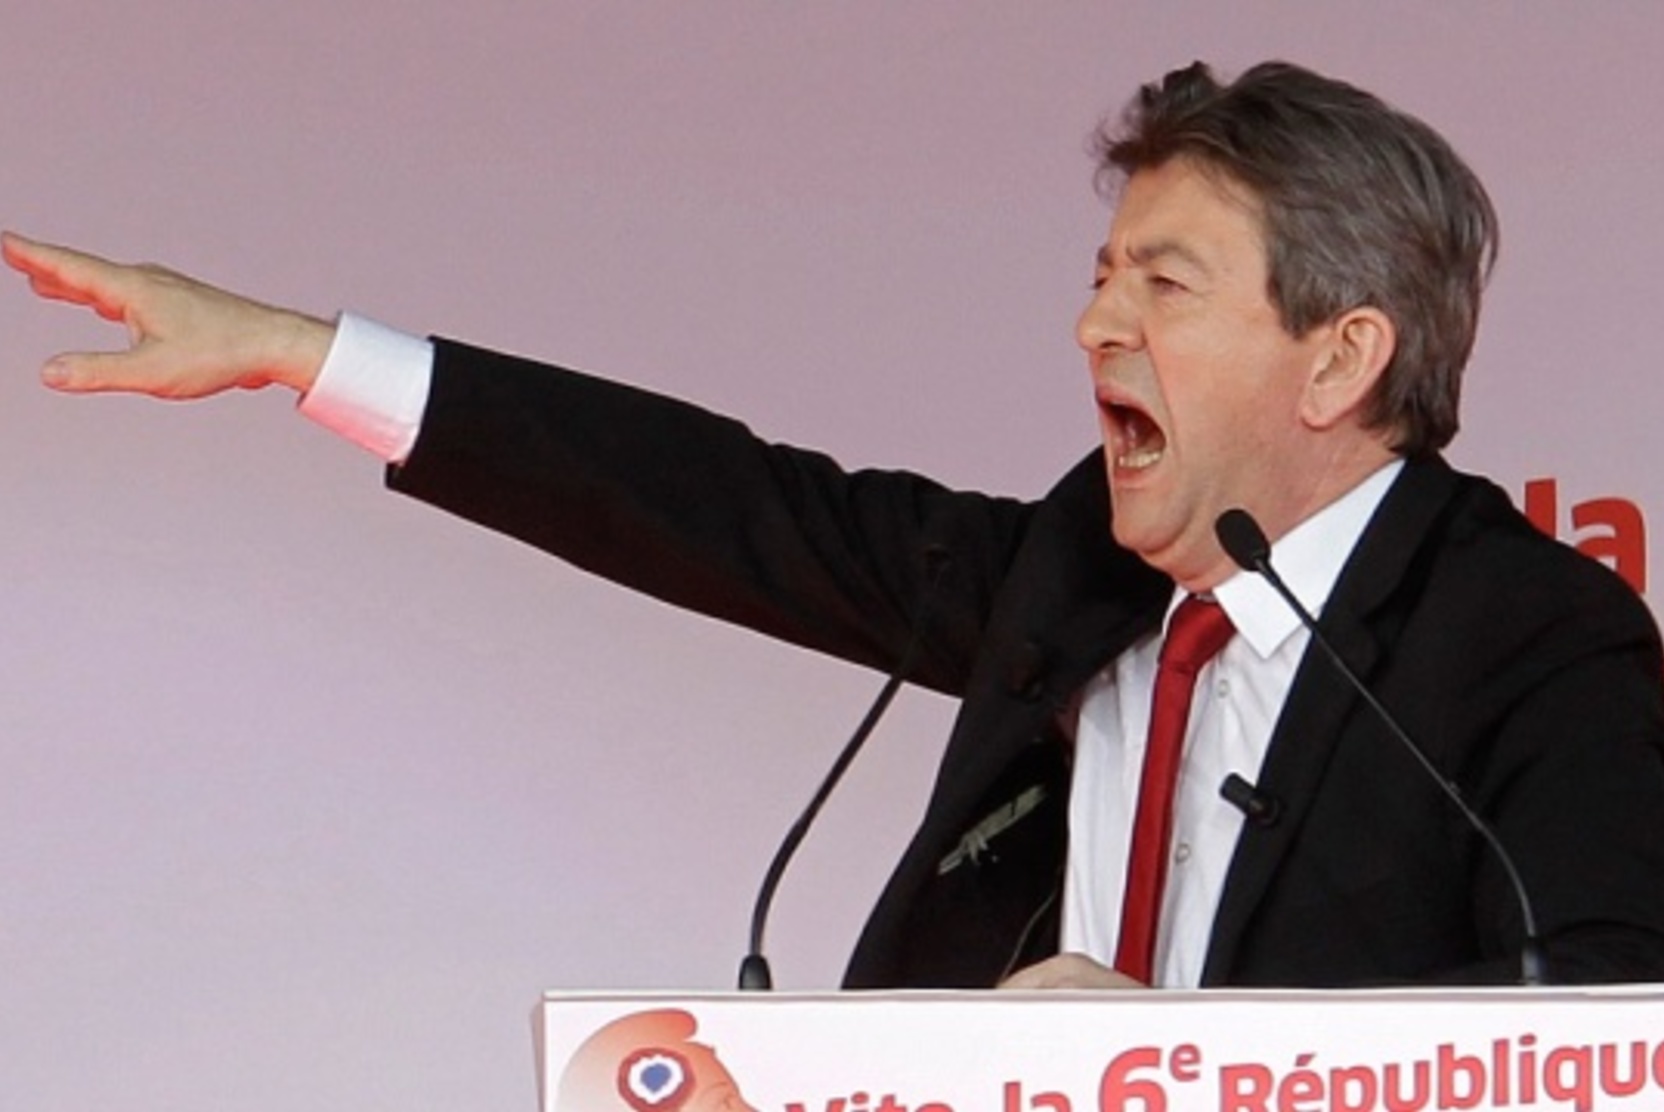 Меланшон призвал соотечественников избрать его премьер-министром Франции